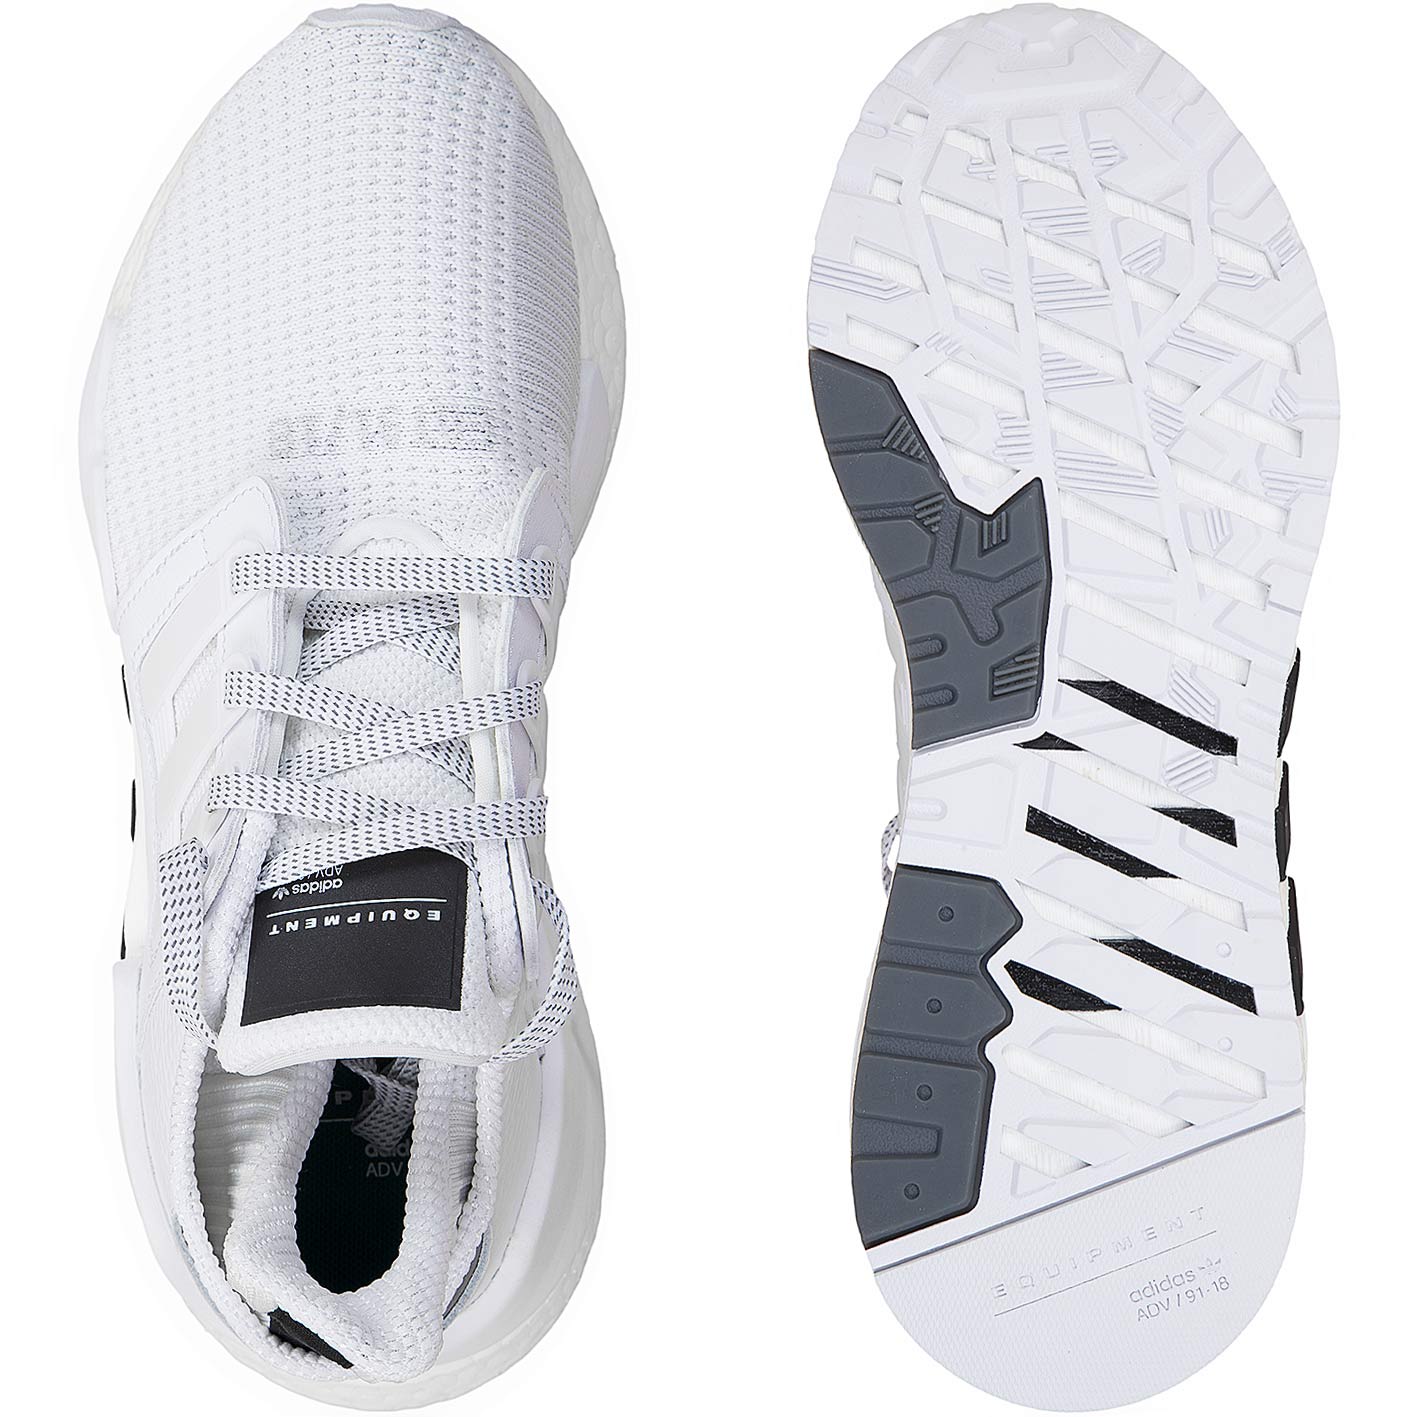 ☆ Adidas Sneaker Equipment Support 91/18 weiß/schwarz - hier bestellen!